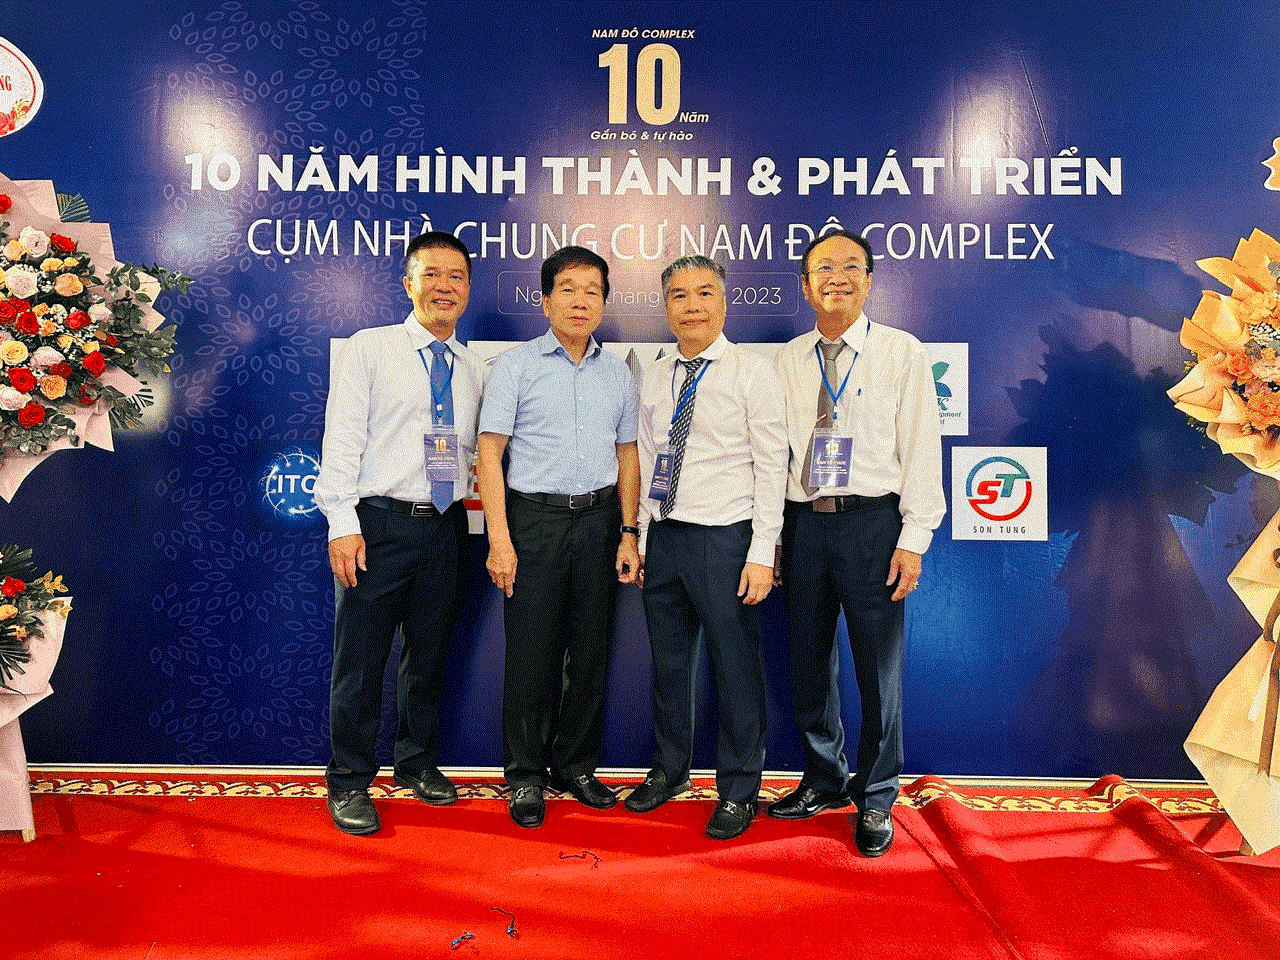 Chủ tịch Nguyễn Quốc Hiệp kể chuyện giảm giá toàn bộ căn hộ tại Nam Đô Complex cách đây 10 năm đến Lễ kỷ niệm đặc biệt lần đầu tiên có ở  Việt Nam - Ảnh 2.